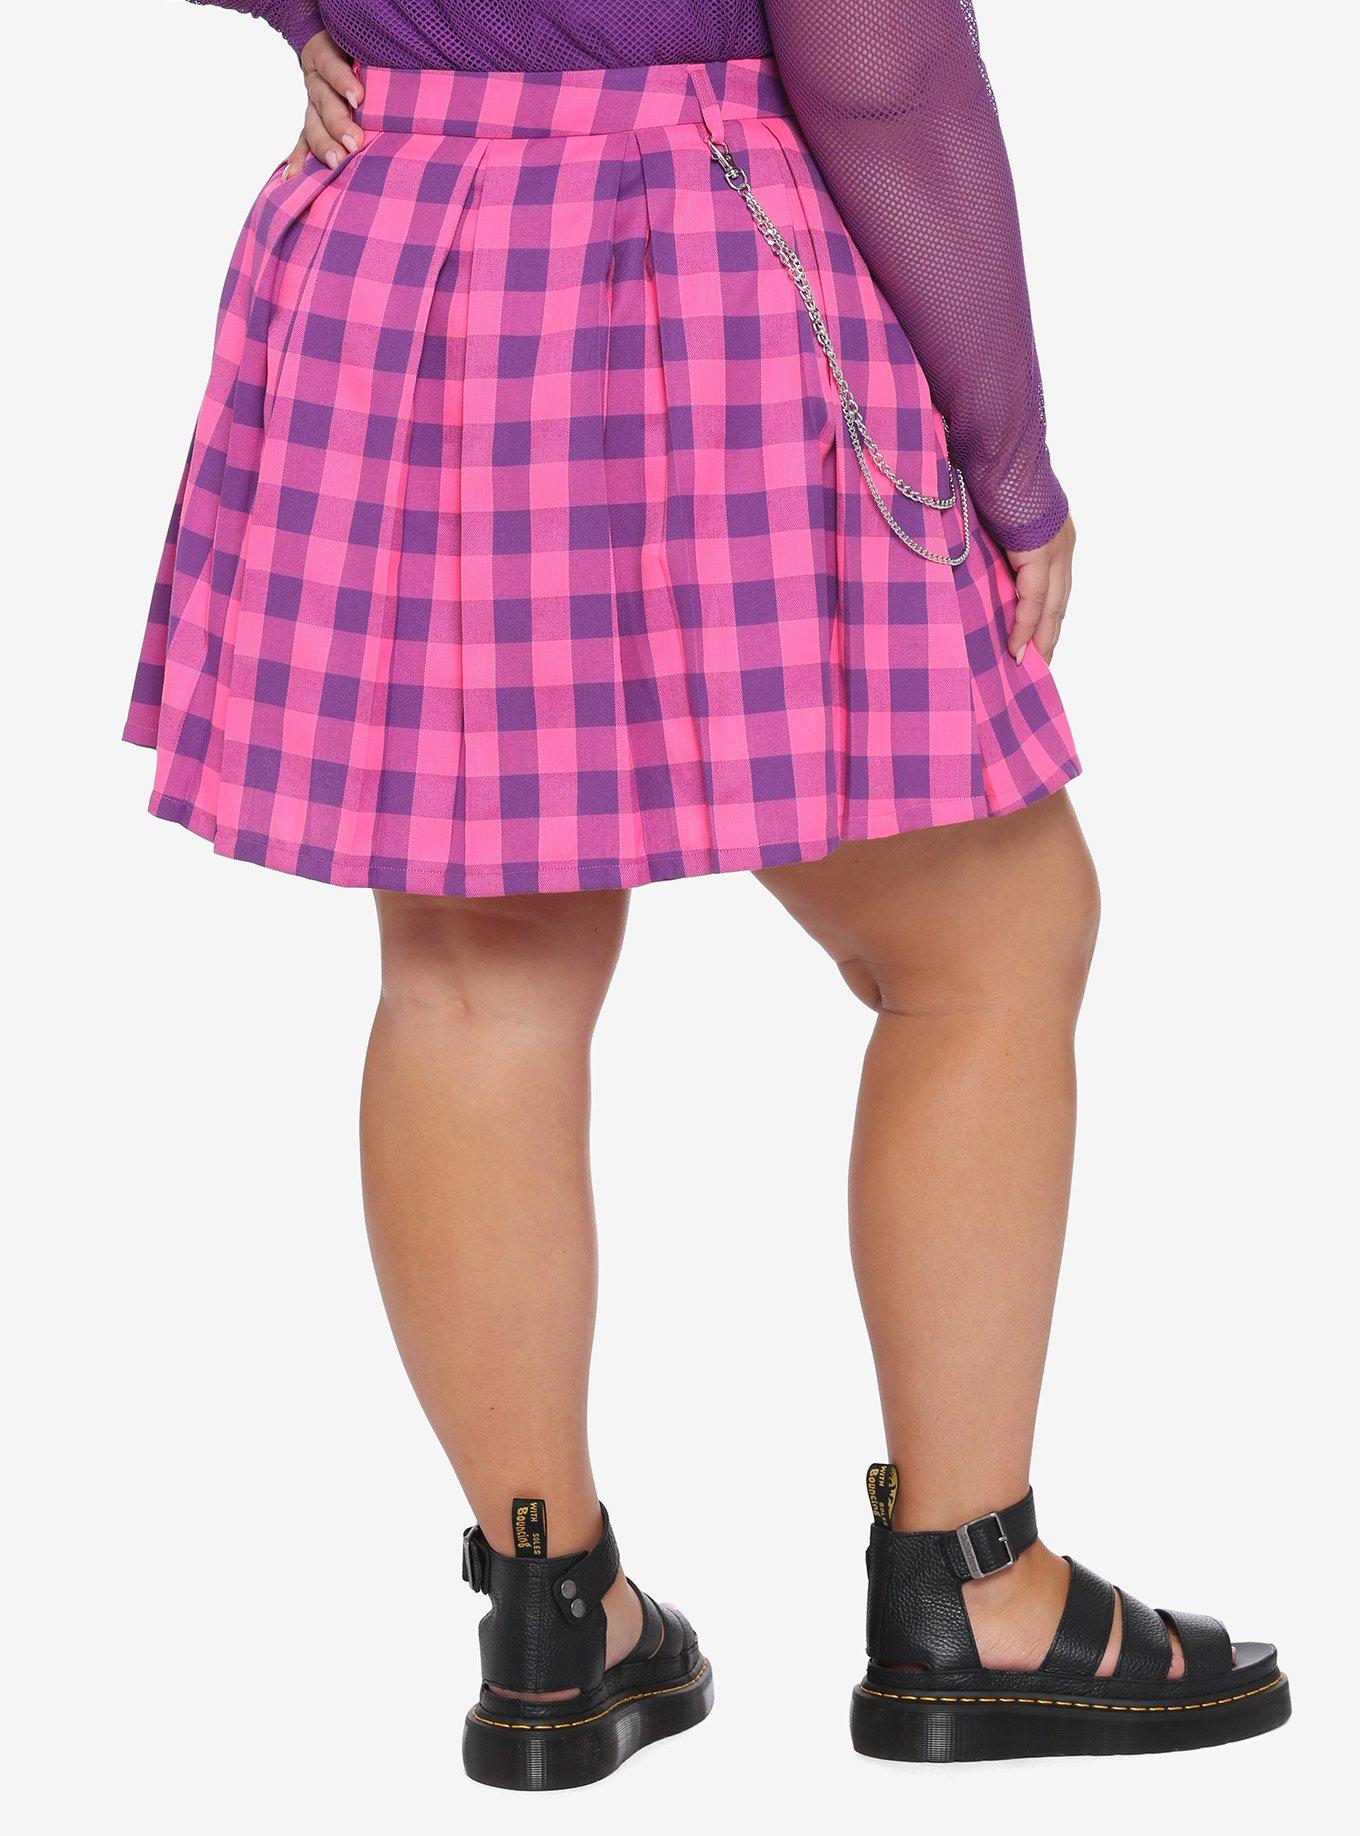 Pink & Purple Plaid Pleated Chain Skirt Plus Size, PLAID, alternate